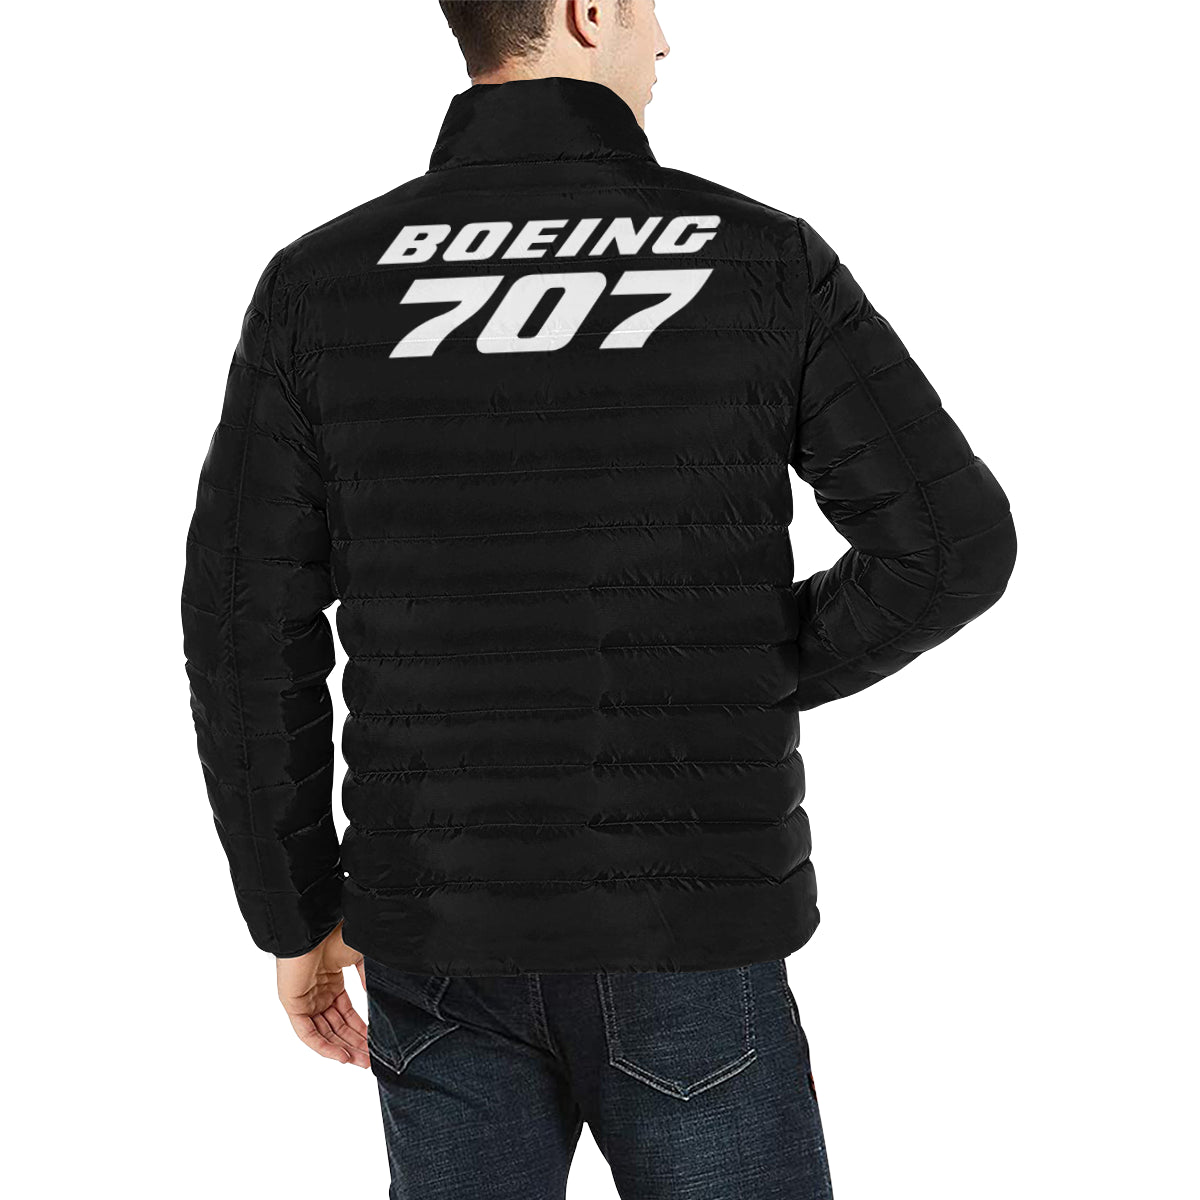 BOEING 707 Men's Stand Collar Padded Jacket e-joyer